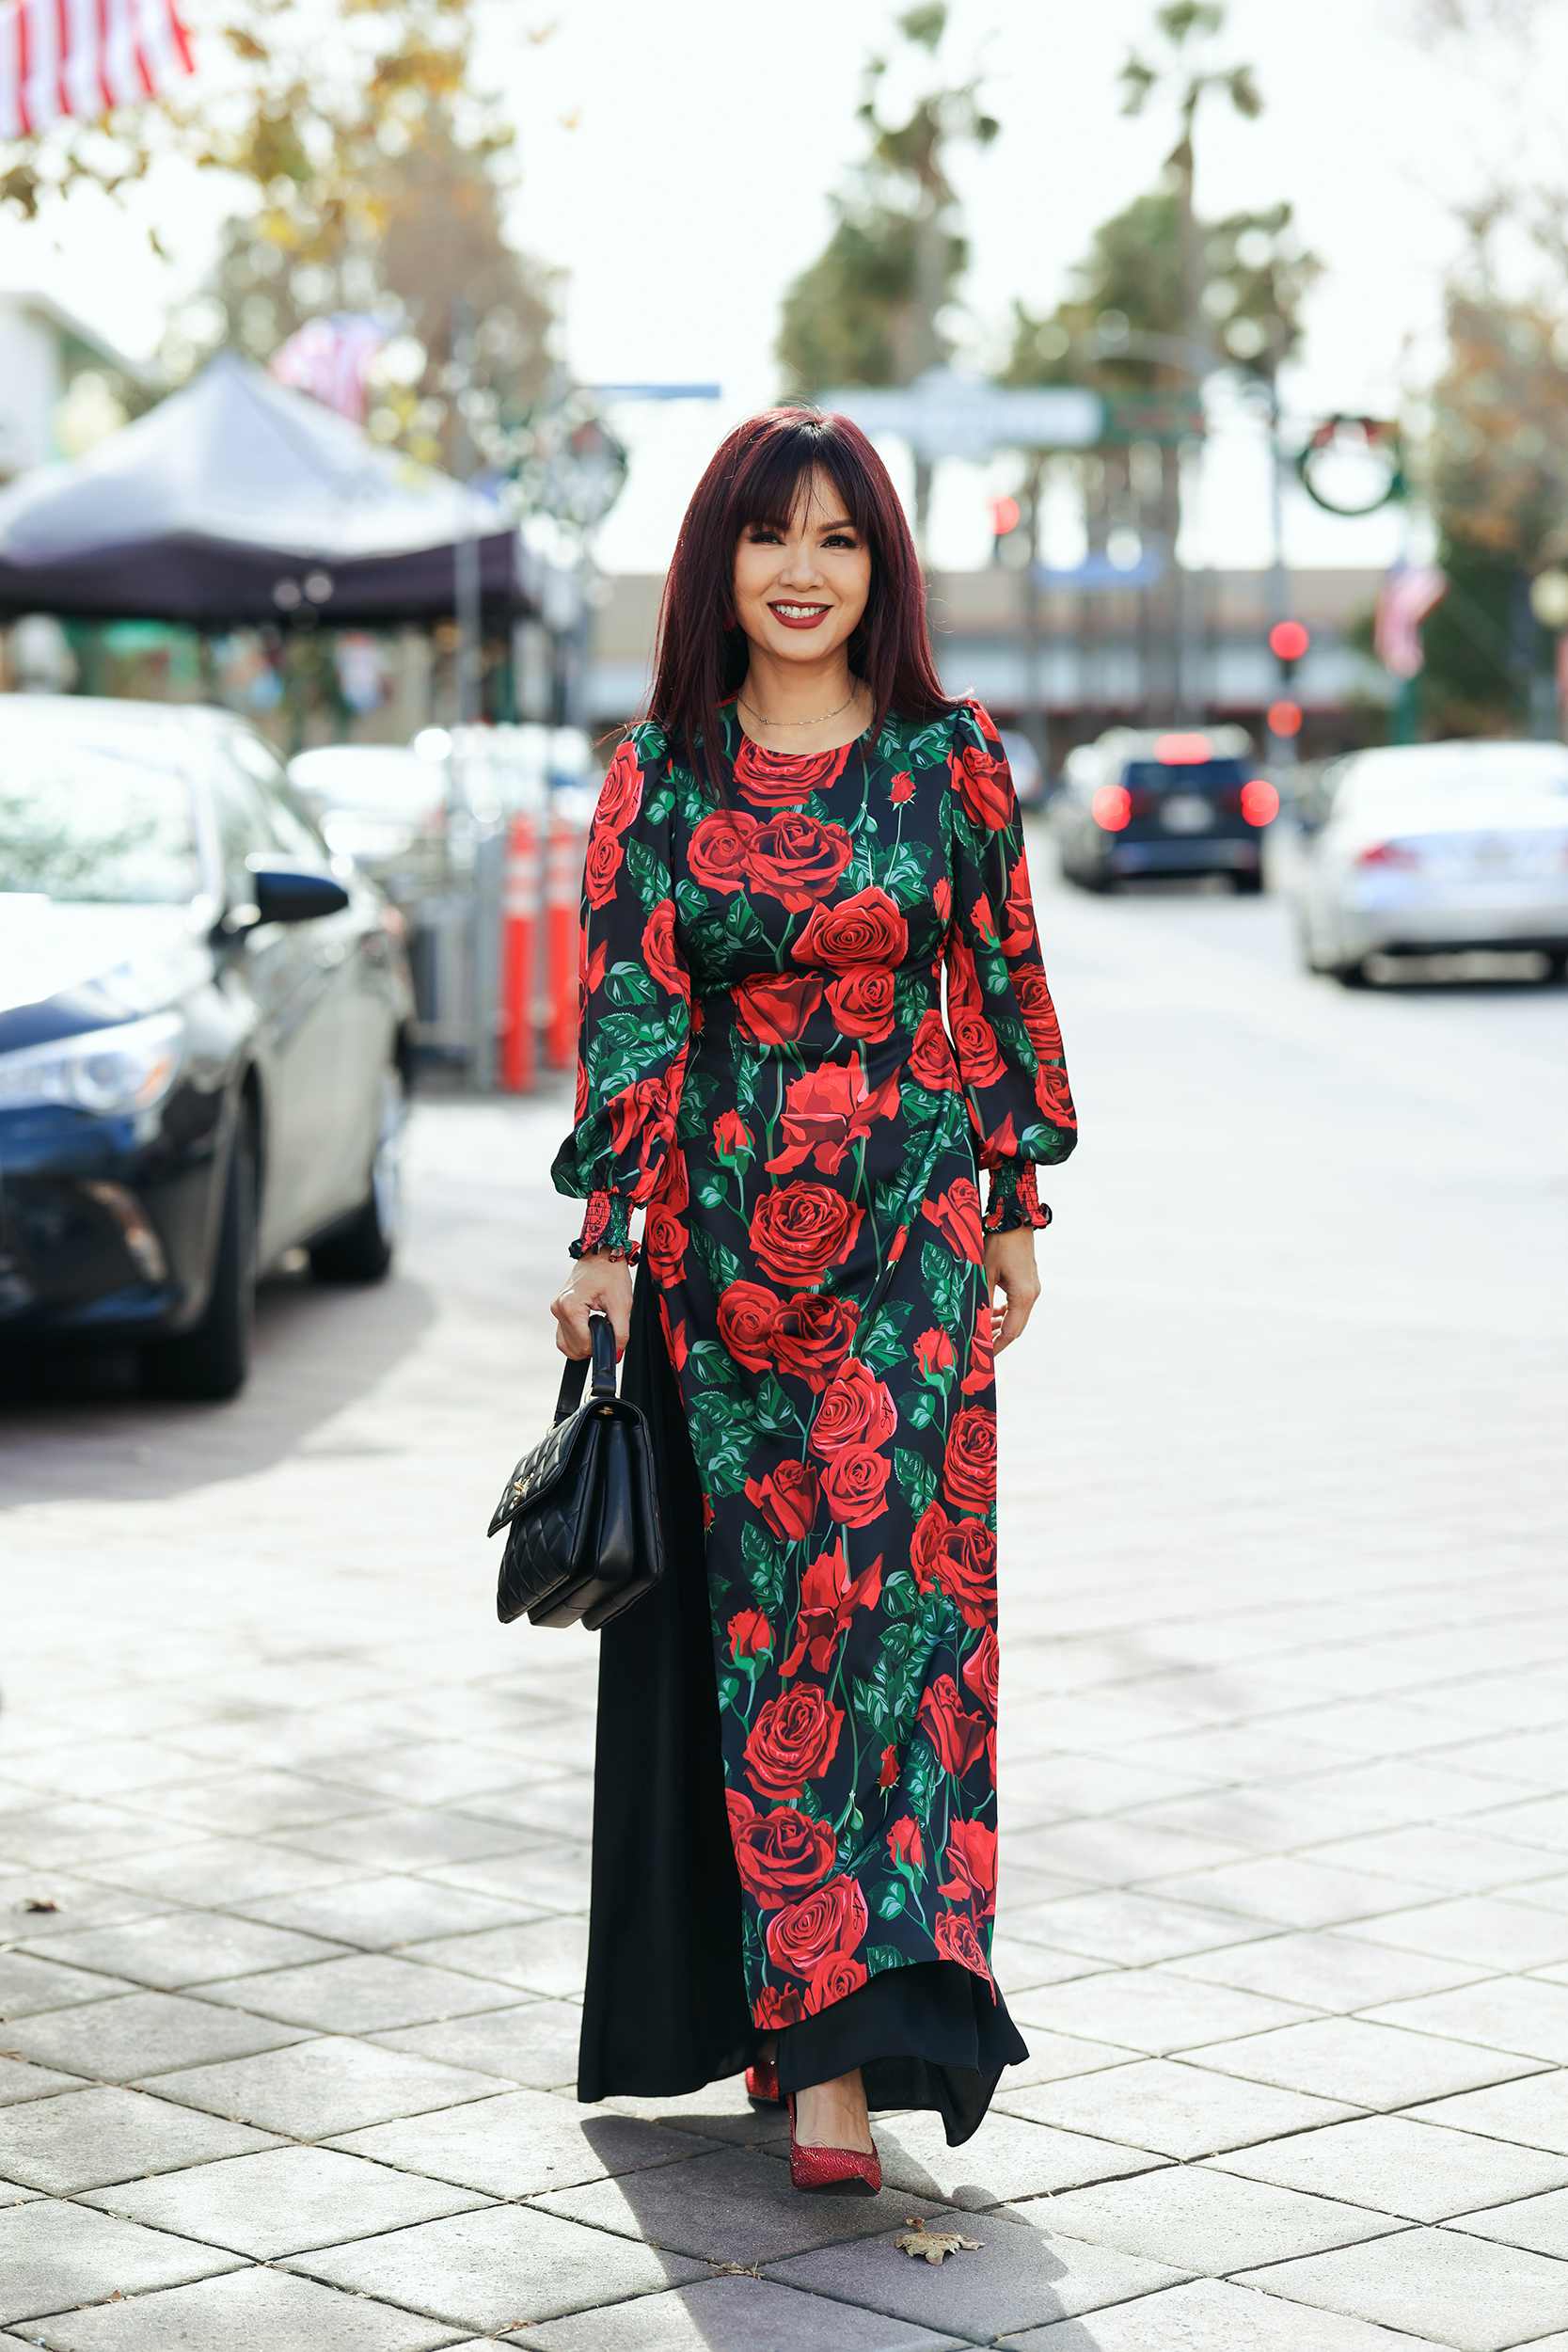 Hoa hậu Ngọc Hân với ý tưởng kết hợp văn hóa Nhật Bản và Việt Nam trong tà áo dài - ảnh 9